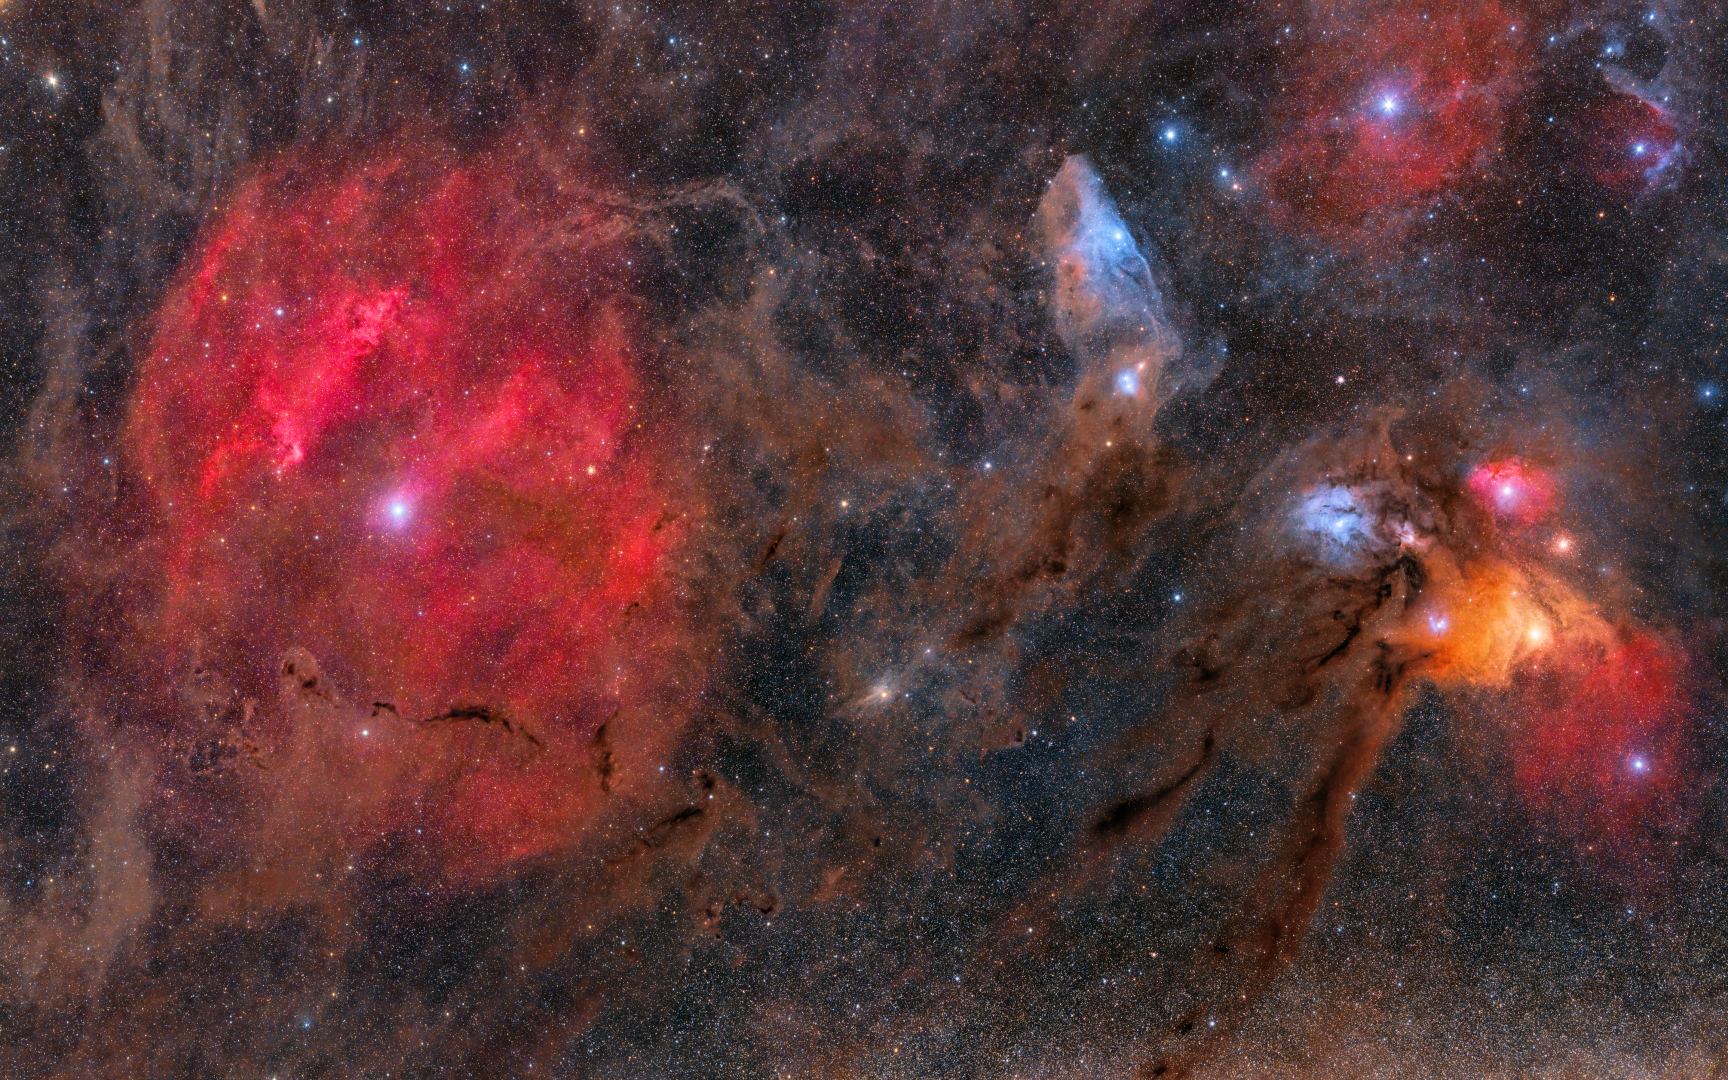 Zdjęcie Mgławicy Zeta i Rho Ophiuchi z kompleksem pyłowym autorstwa Ireneusza Nowaka